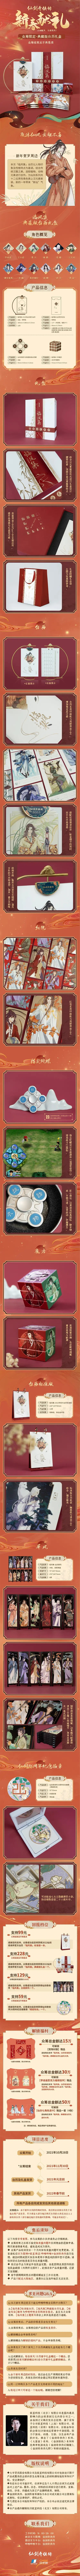 《仙剑奇侠传》2022台历礼盒典藏版开卖 售价228元